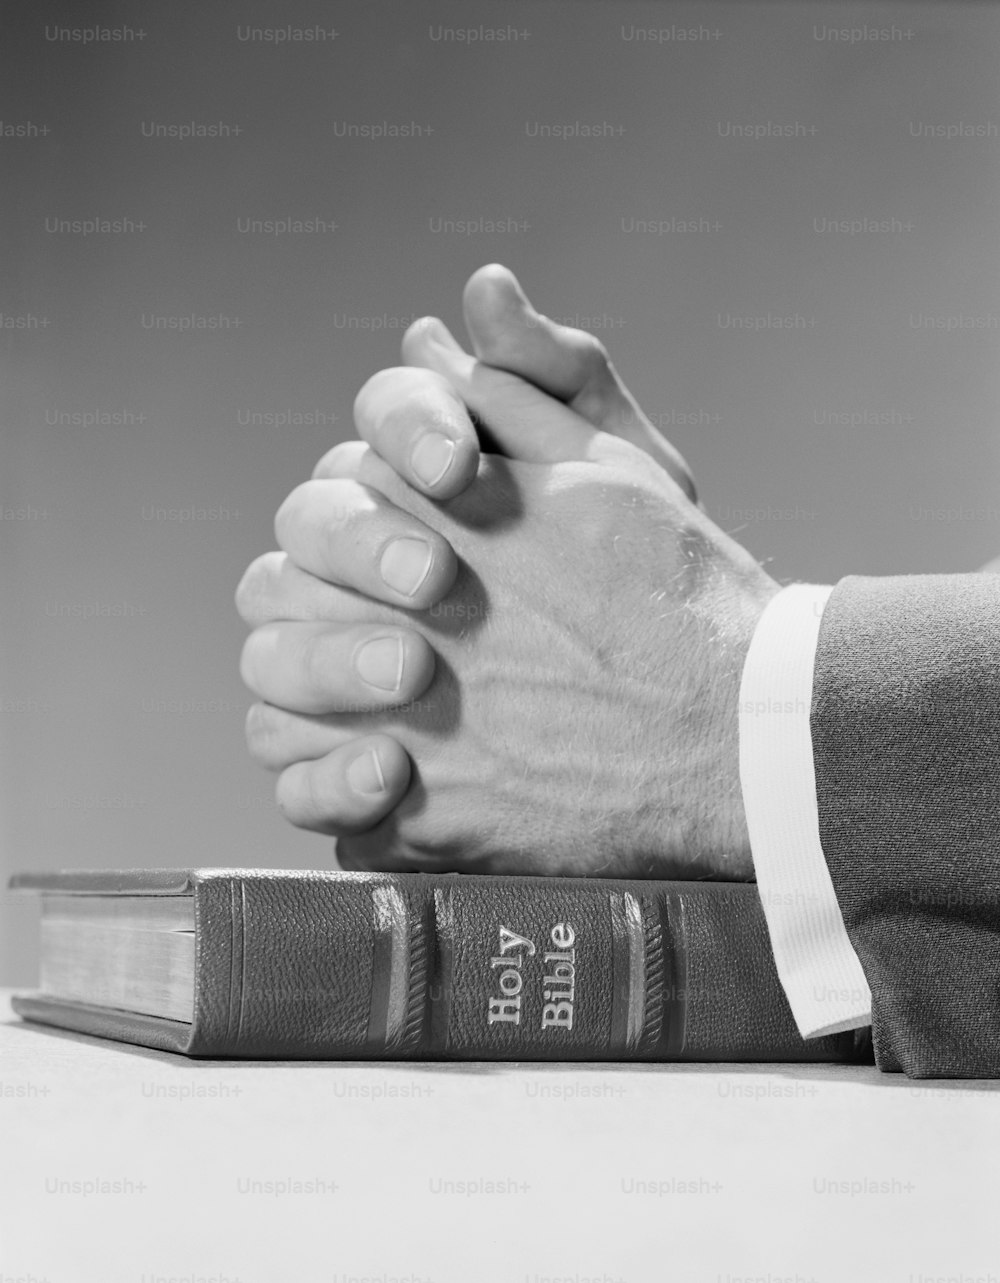 アメリカ合衆国 - 1960年代頃:祈りの中で、聖書の上に置かれた人間の手。